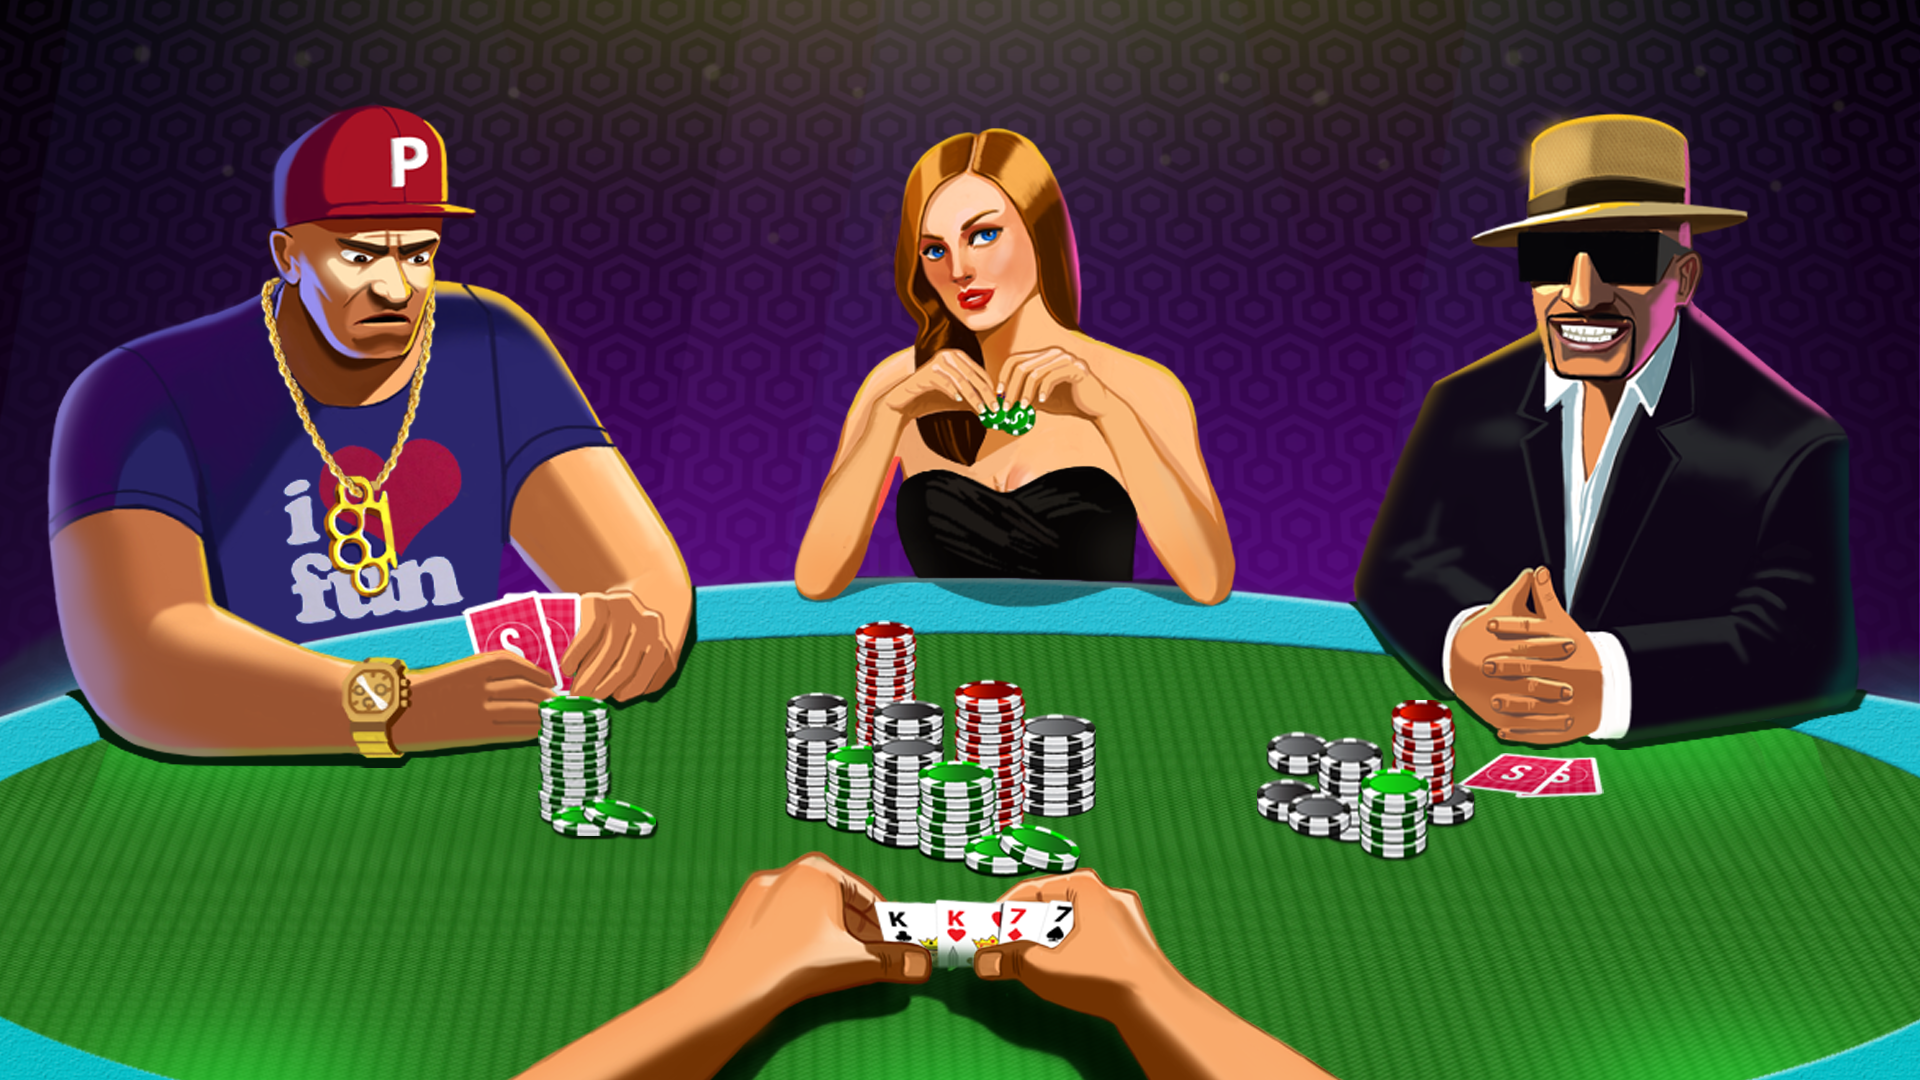 Preferring online sites for poker games